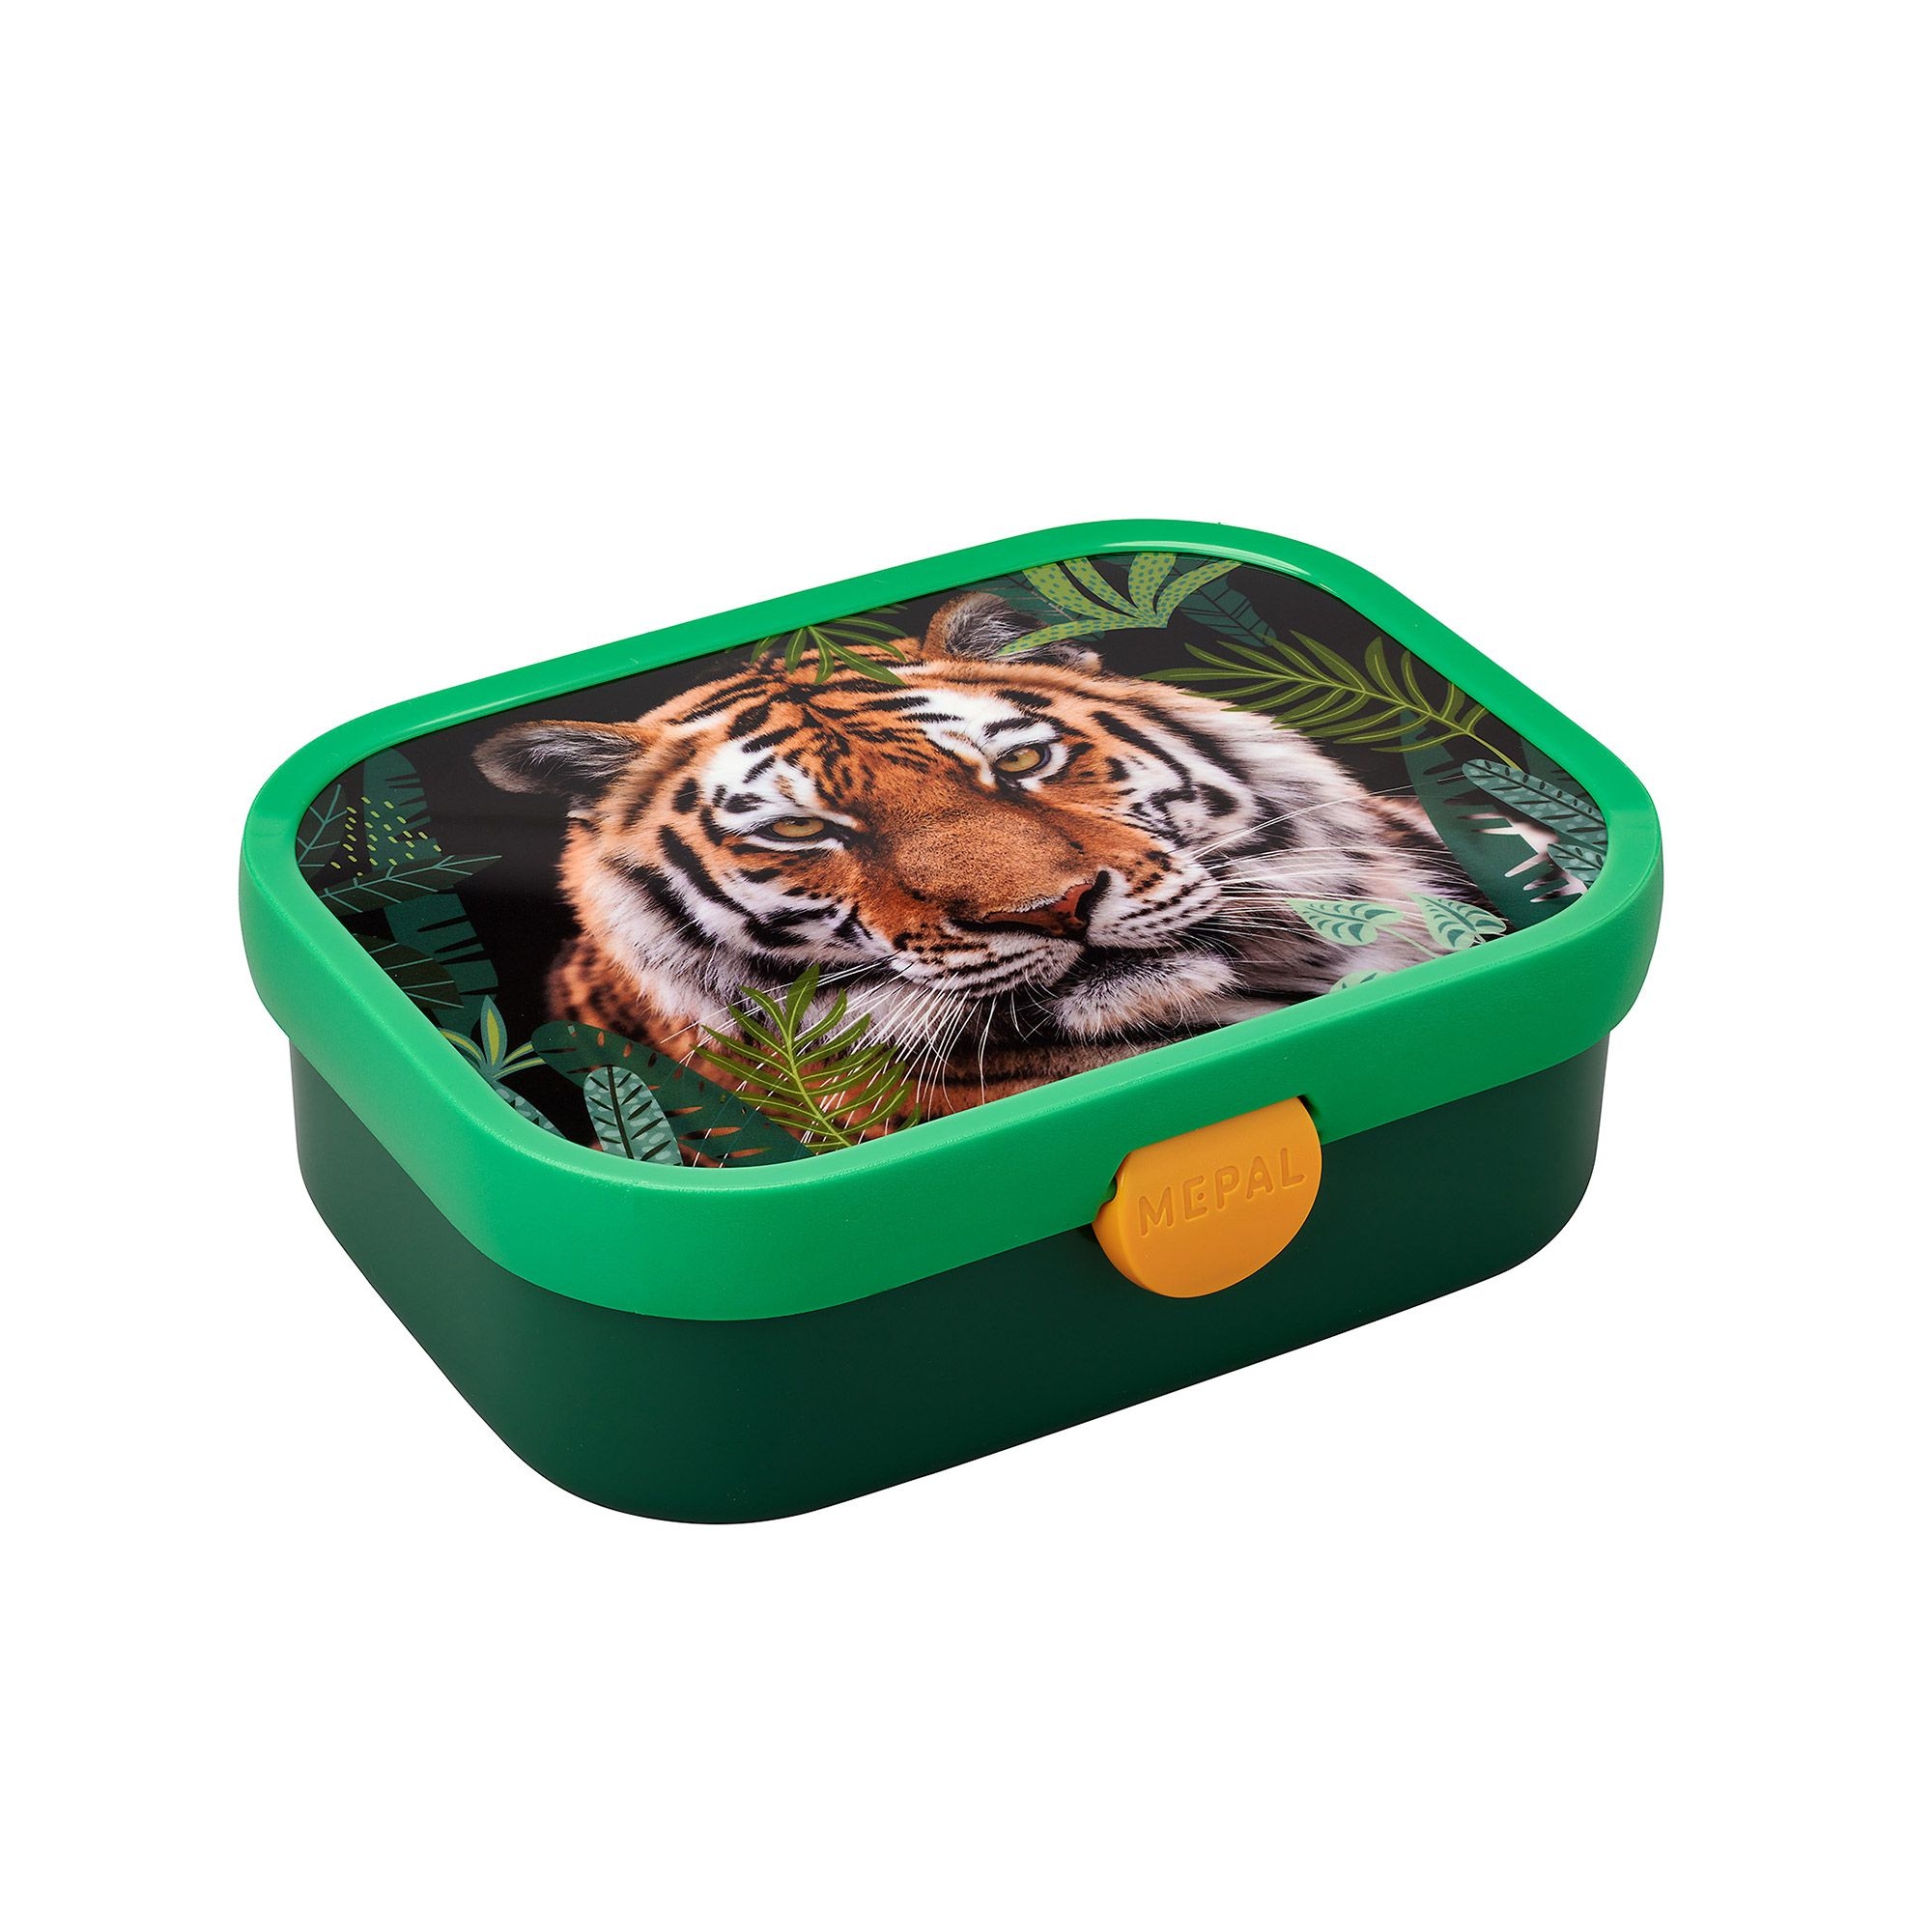 Mepal - Campus Wild Tiger - verschiedene Produkte